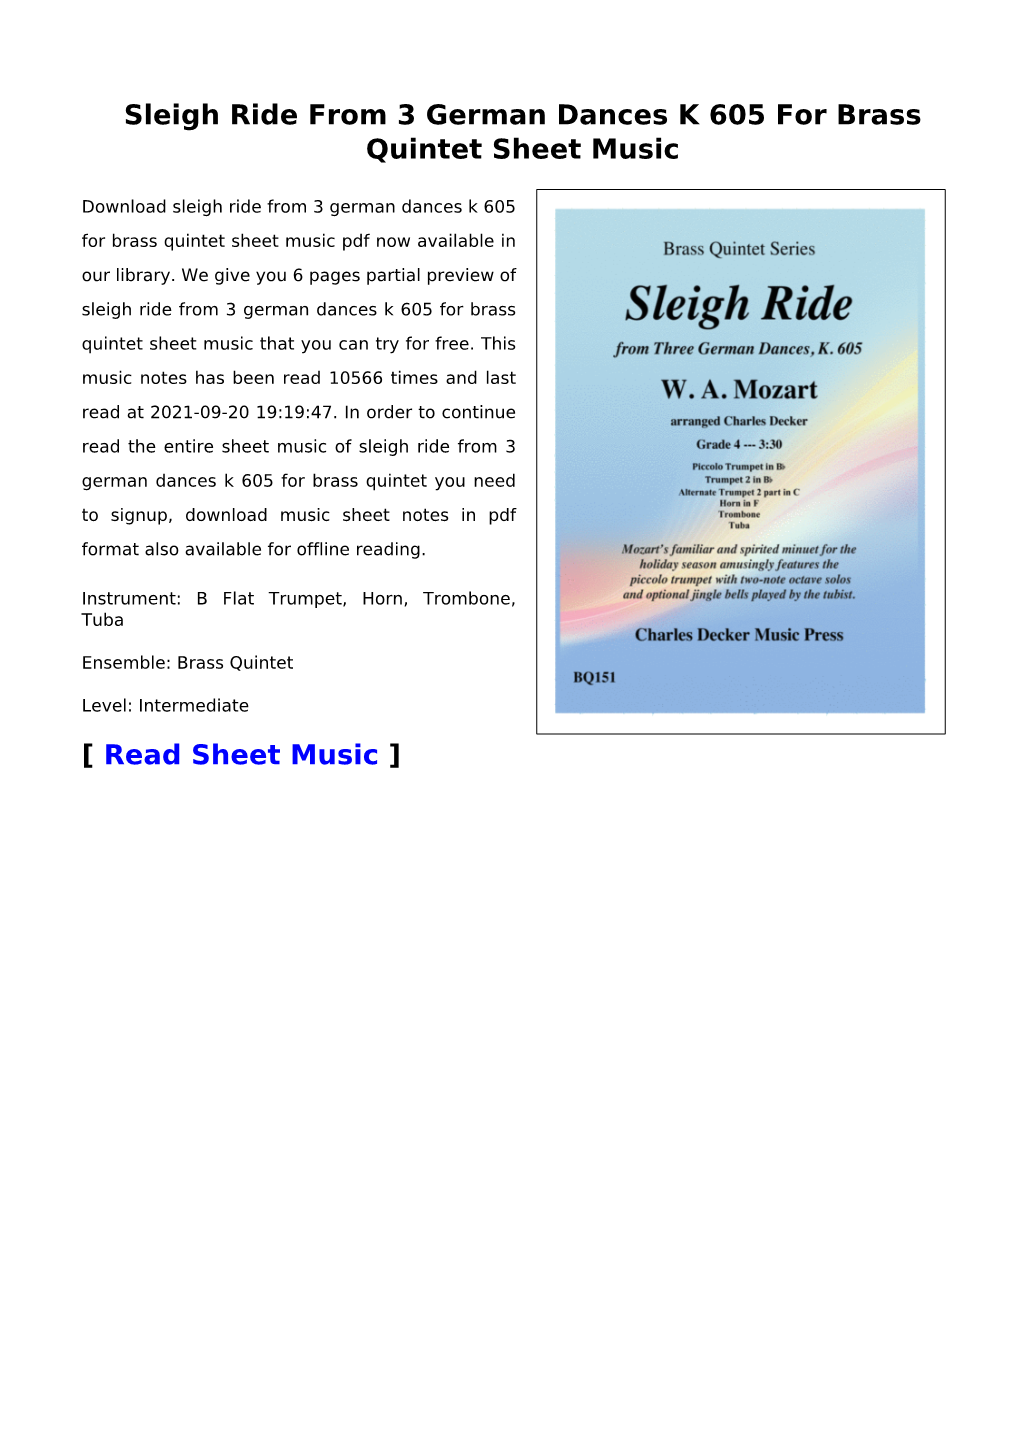 Sleigh Ride from 3 German Dances K 605 for Brass Quintet Sheet Music